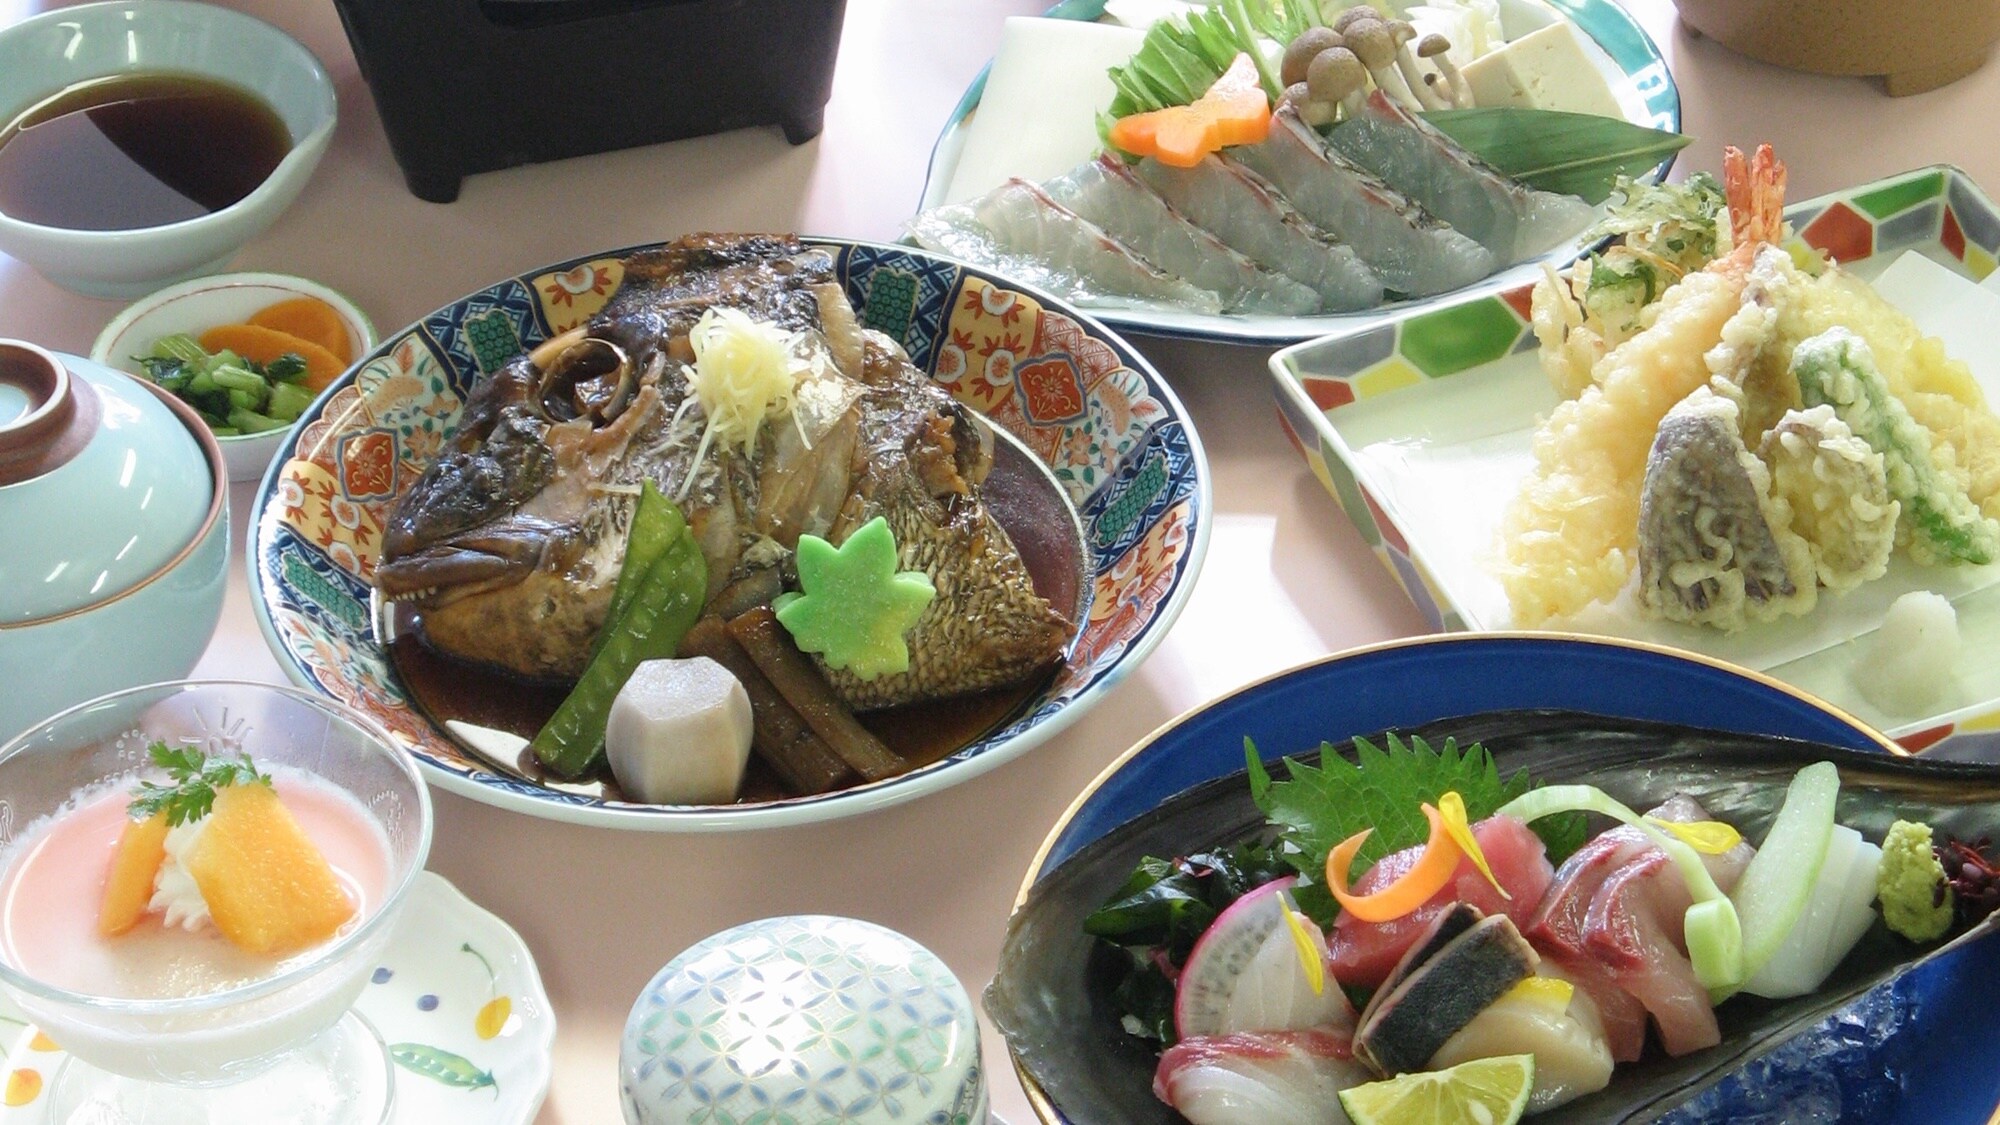 [แผนไม้สน] และหลักสูตร "ทะเล" ที่ใช้อาหารทะเลมากมายจากเมือง Kaiyo, Tokushima